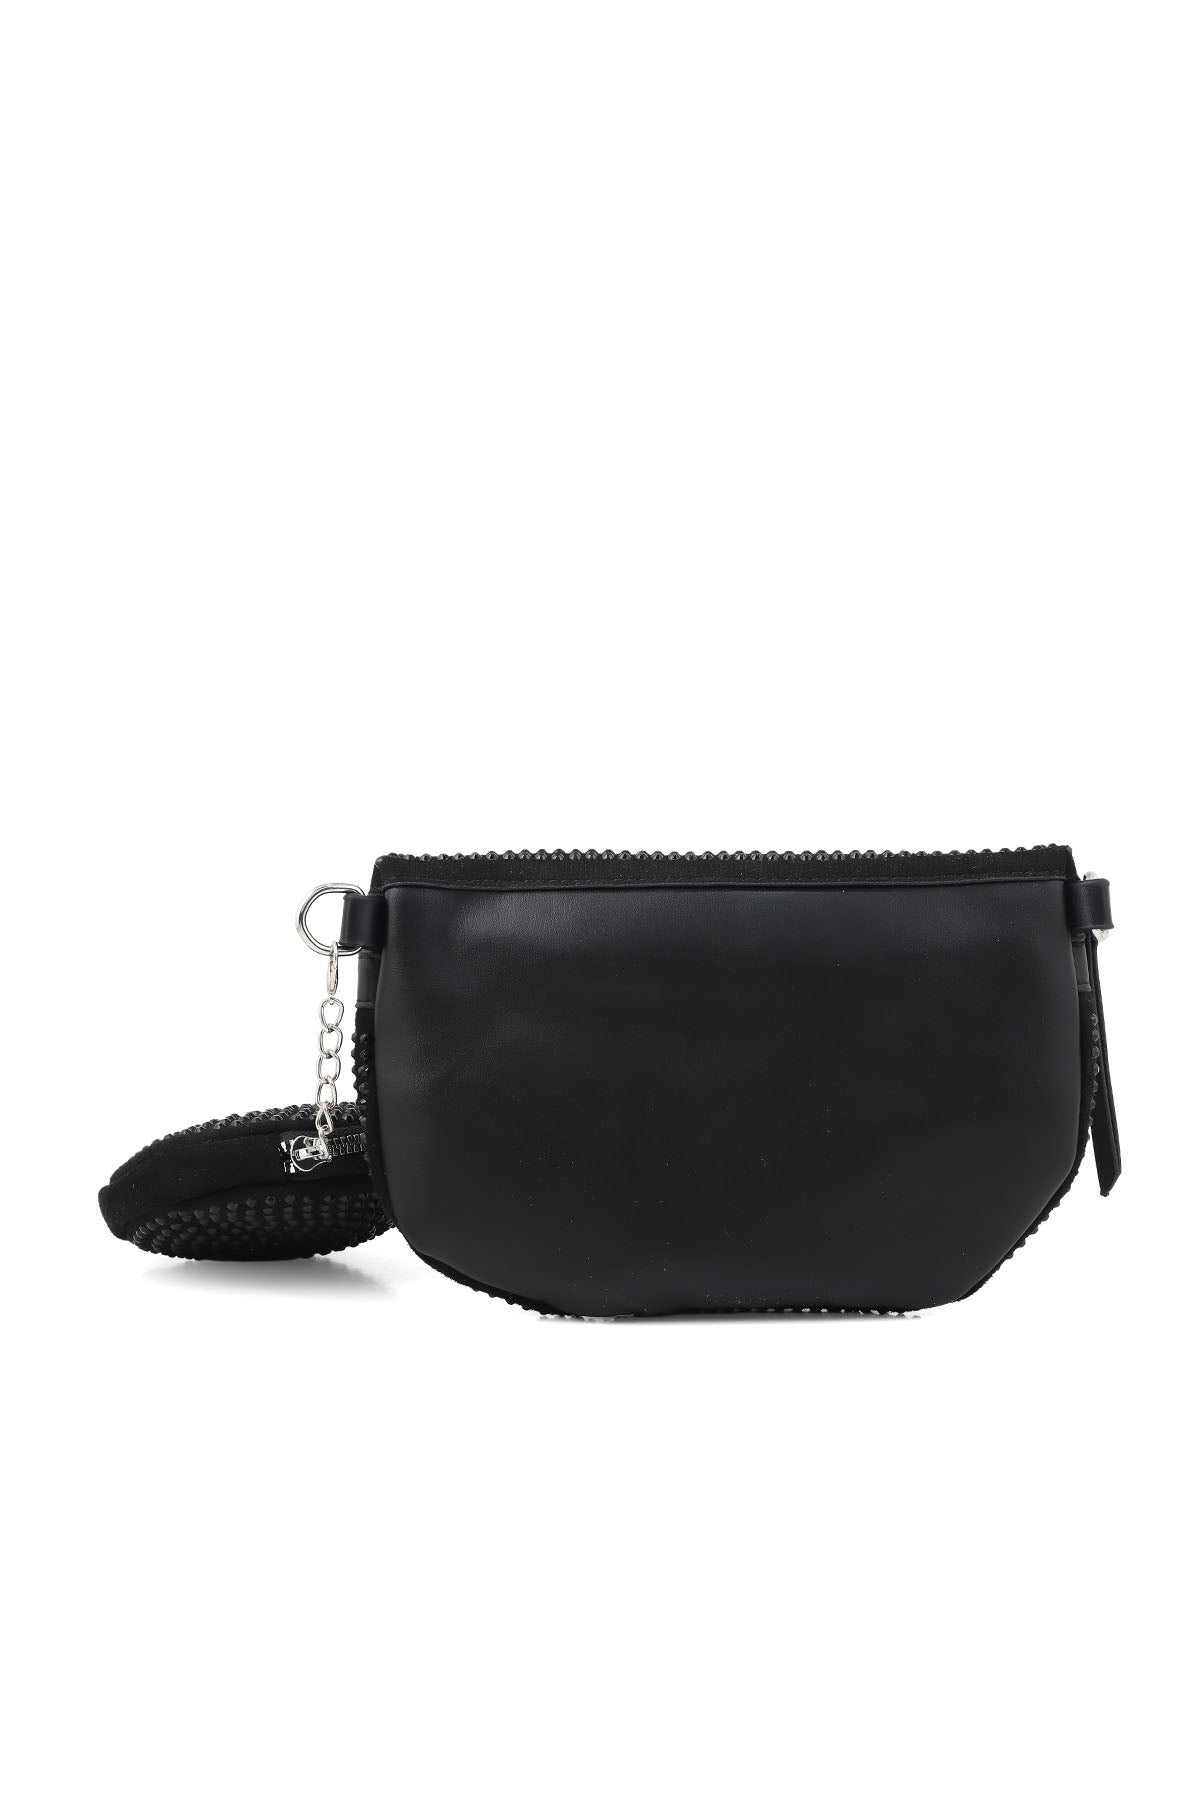 Cross Shoulder Bags B14960-Black